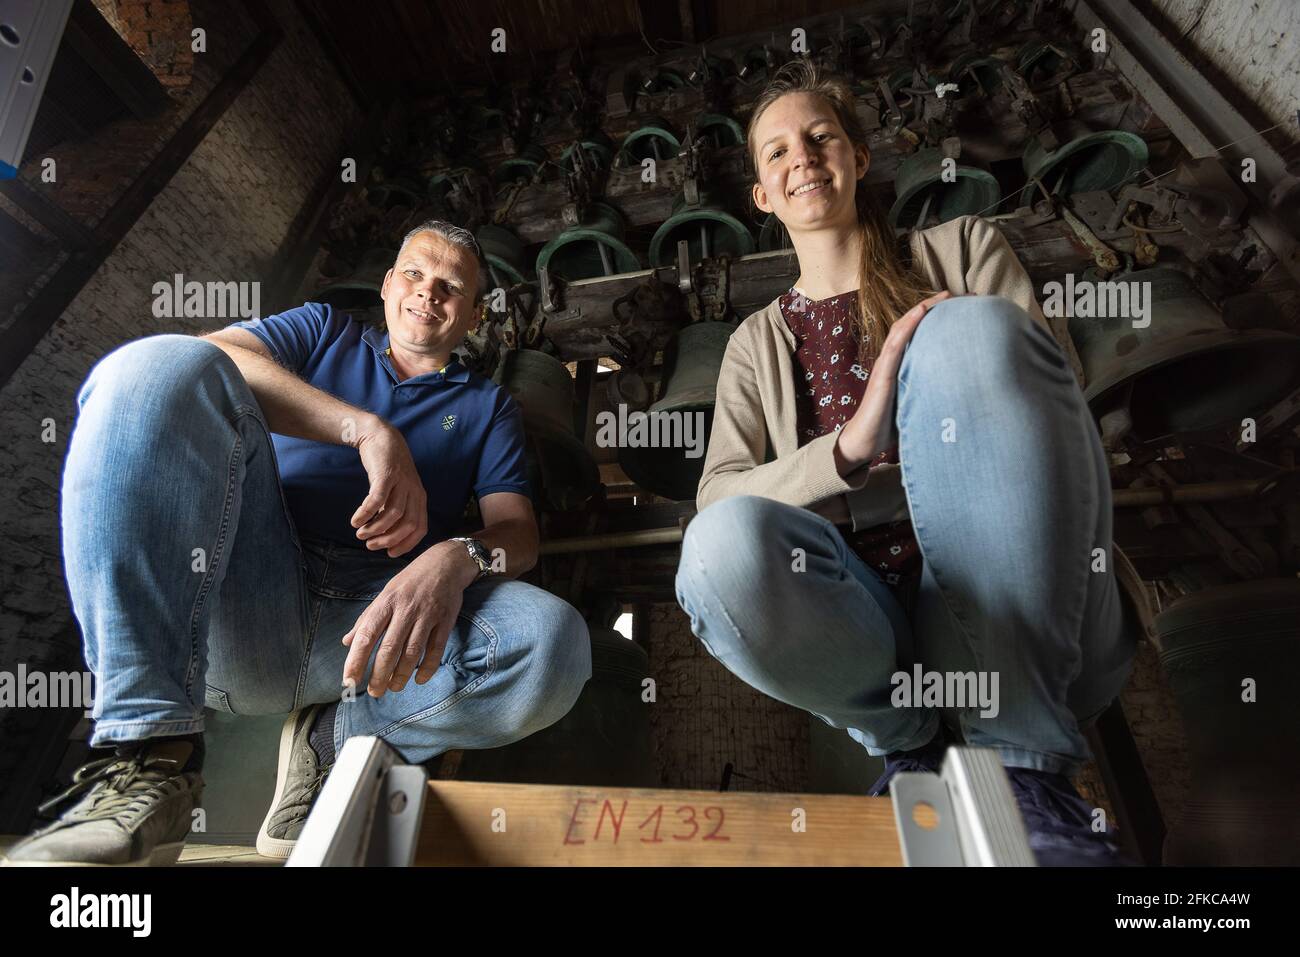 Les carillonneurs Kenneth Theunissen et Jasmijn de Wachter posent pour le photographe à Sint-Niklaas. BELGA PHOTO JAMES ARTHUR GEKIERE Banque D'Images